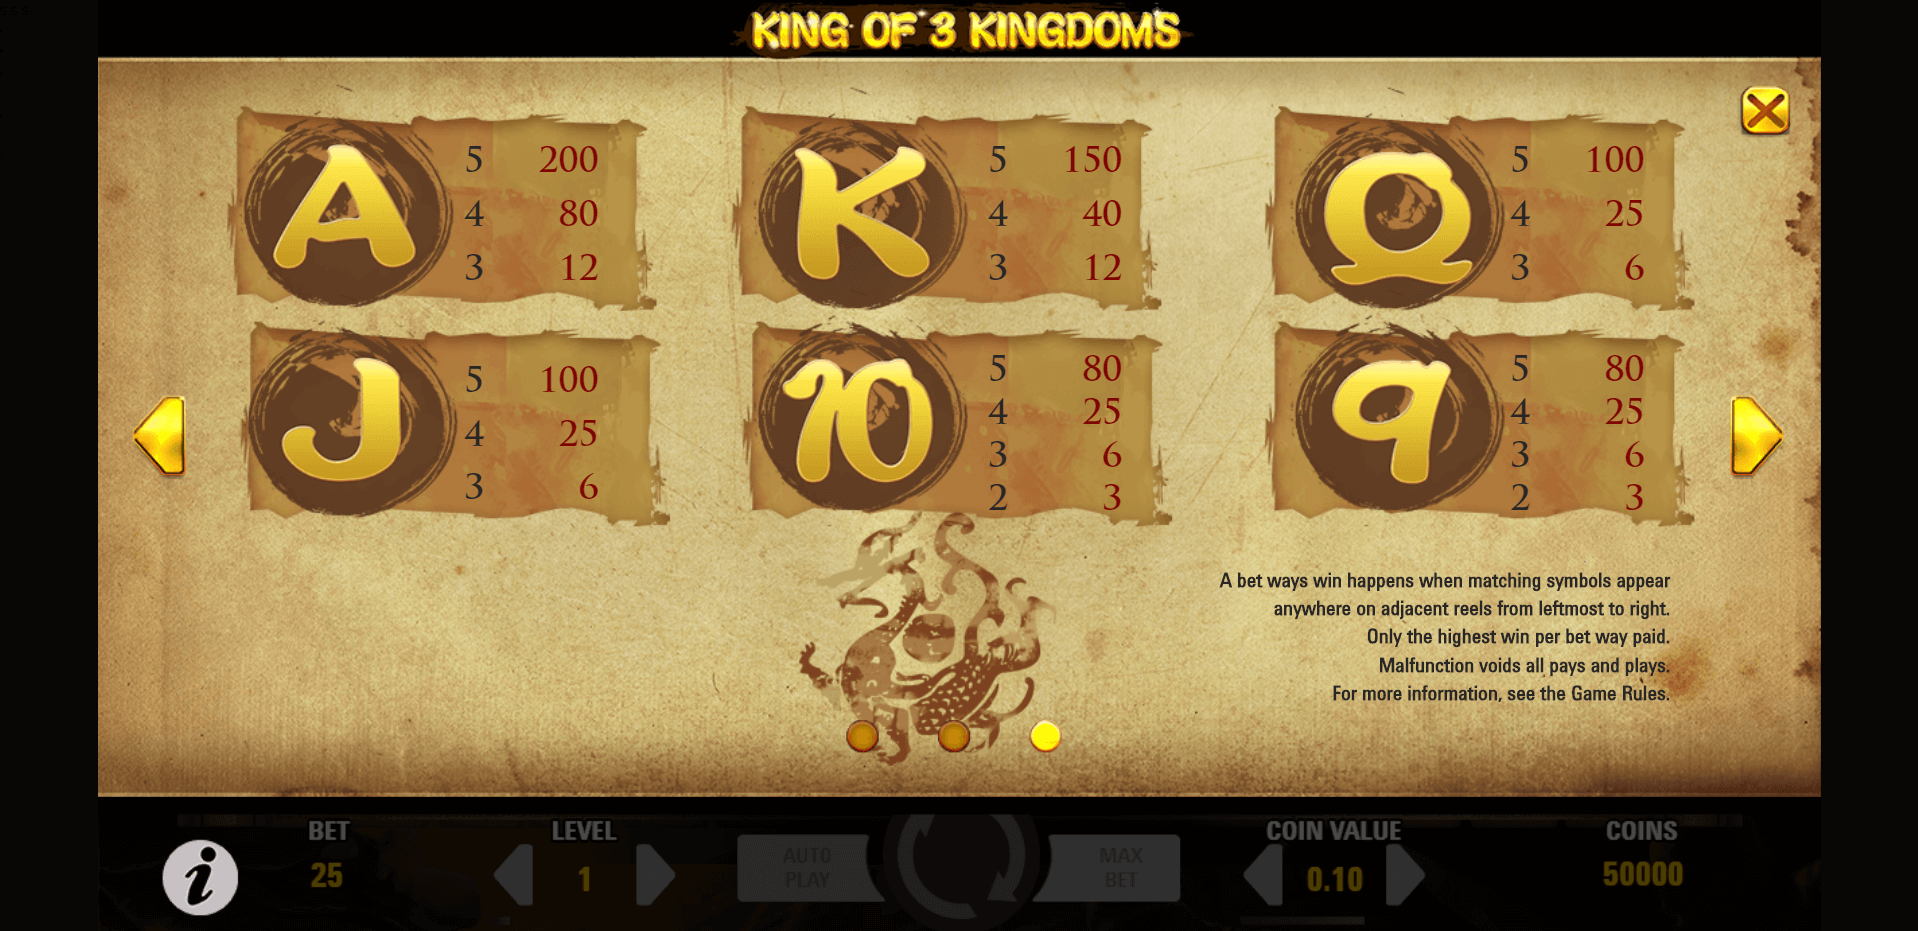 king of 3 kingdoms slot machine detail image 2